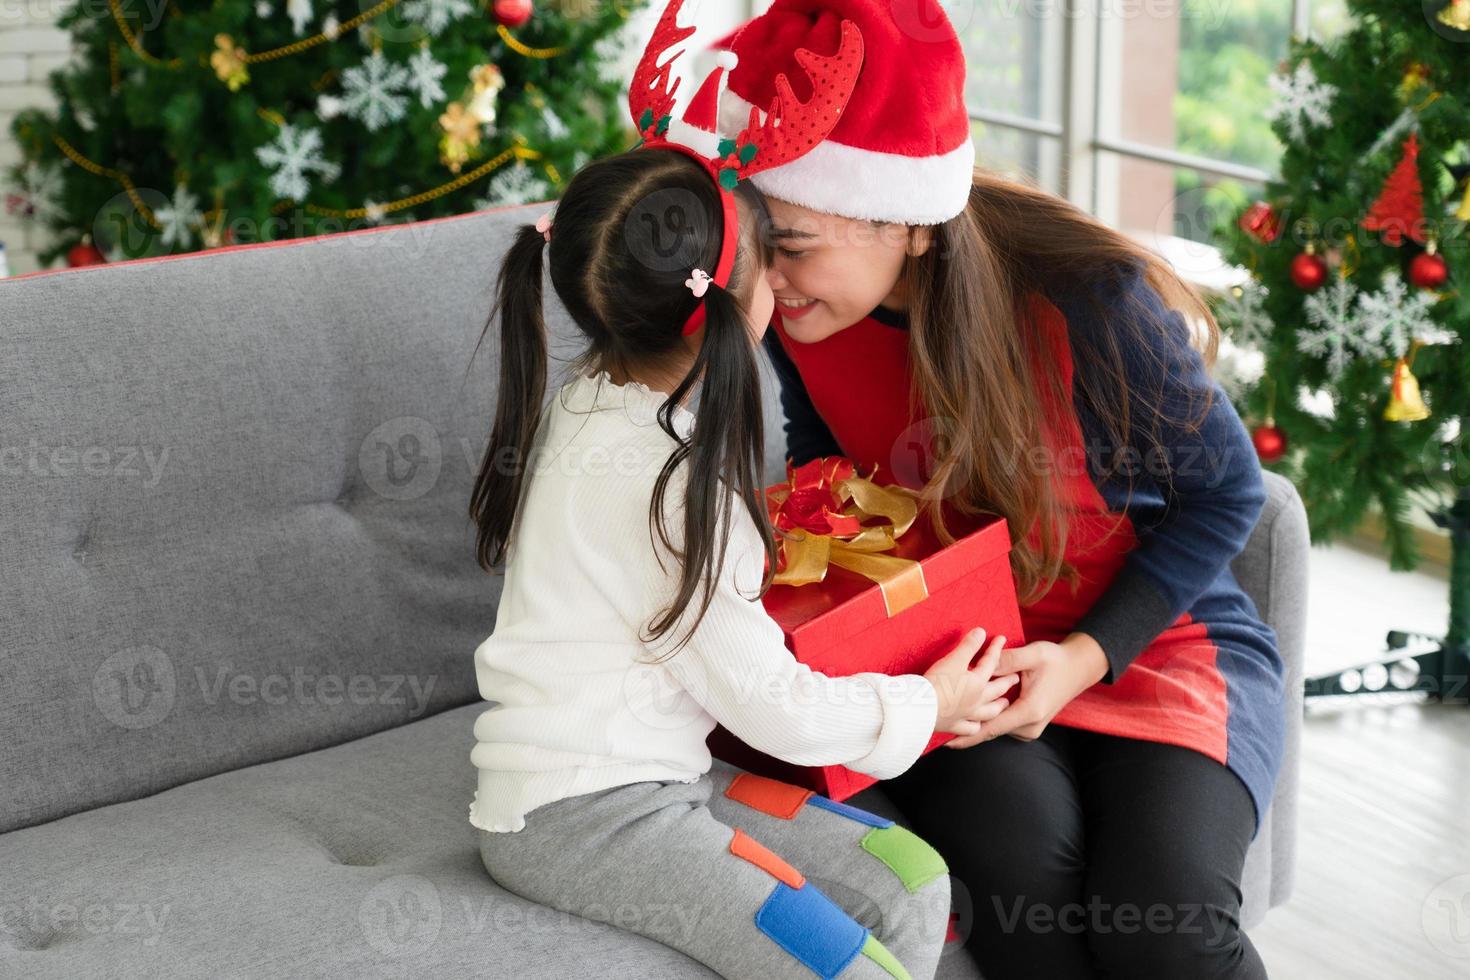 la madre asiatica e il bambino aprono insieme la scatola del regalo di natale foto